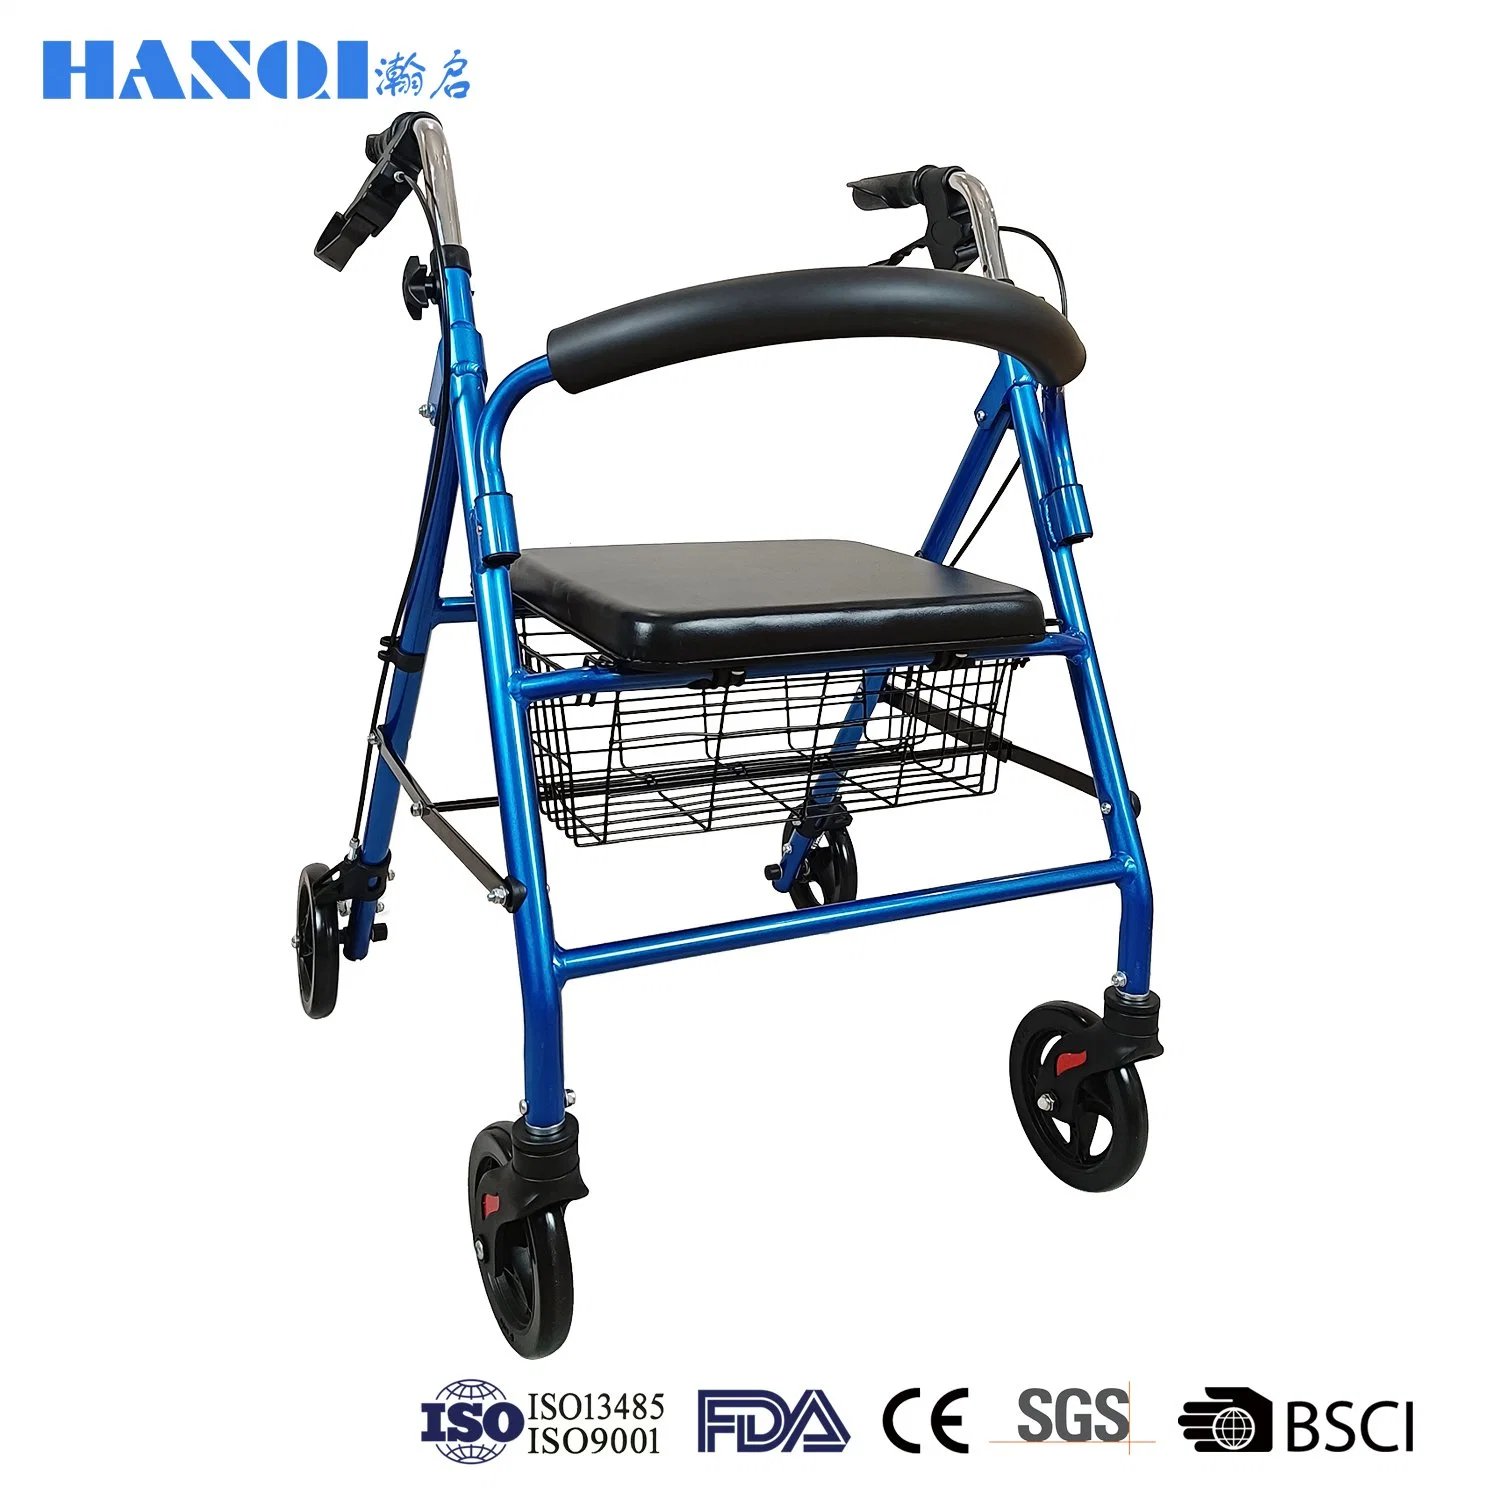 Déambulateur pliable de haute qualité Hanqi avec frein pour personne âgée.